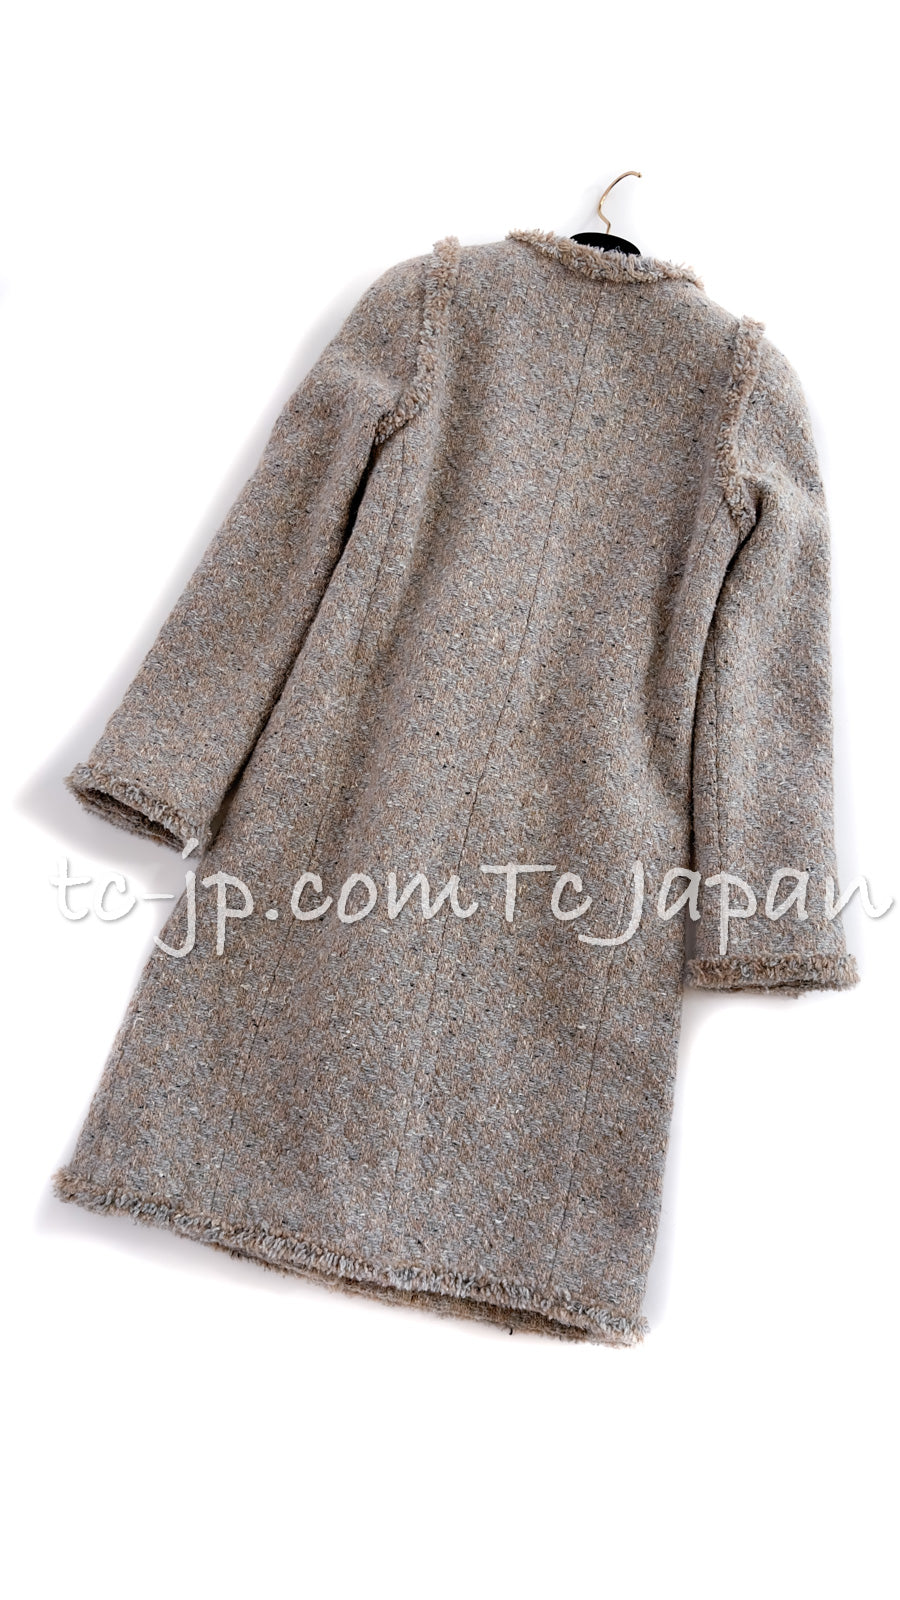 シャネル グレー・ウール・コート CHANEL 17A Grey Wool Coat – TC JAPAN